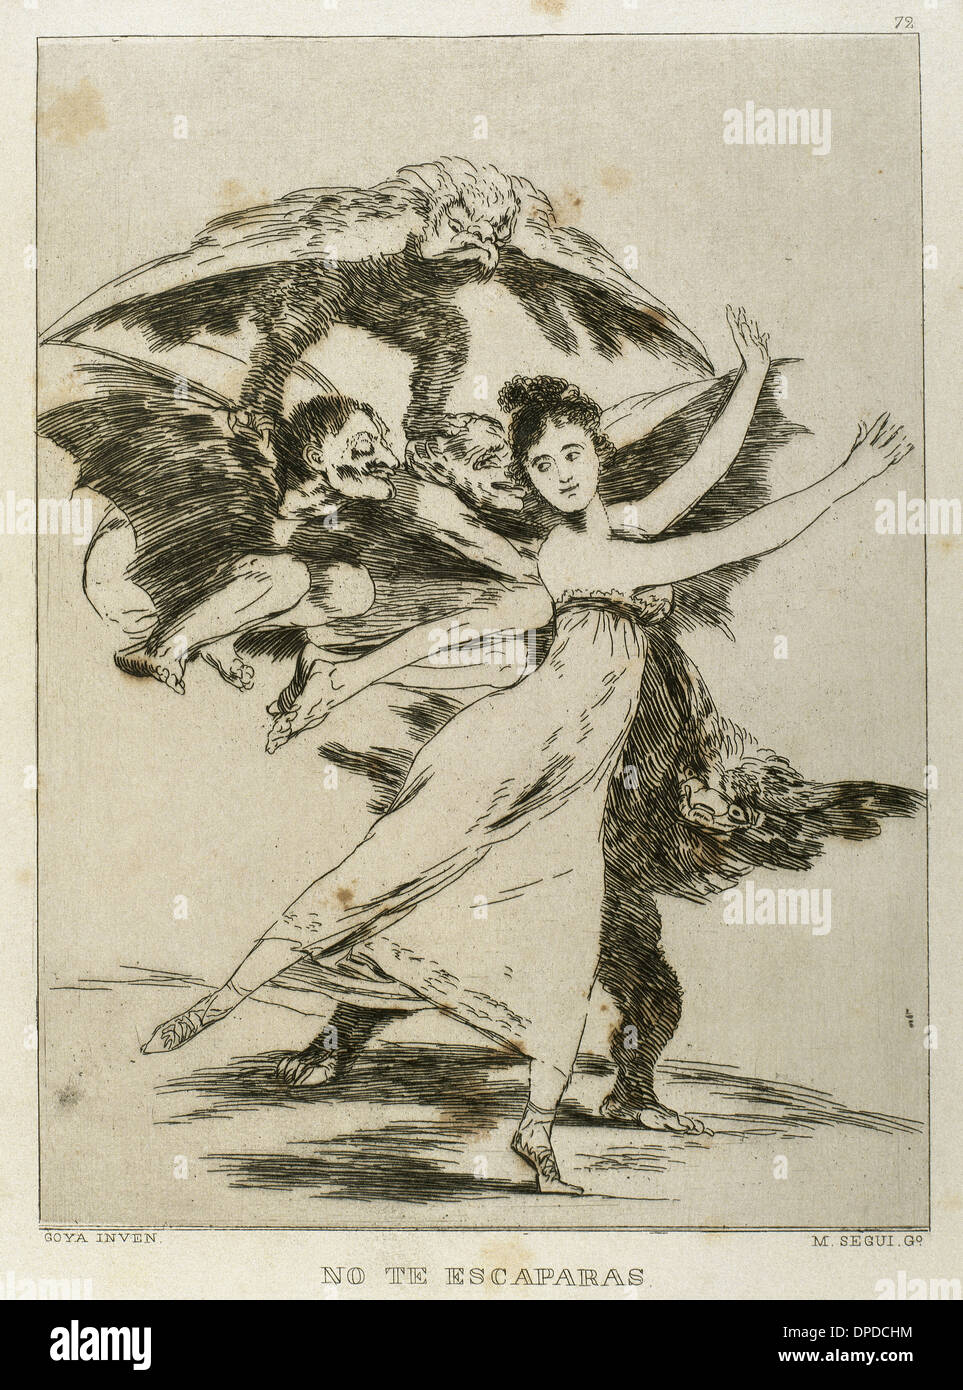 Francisco de Goya (1746-1828). Los Caprichos. Keine Te Escaparas (nicht entkommen). Nummer 72. Aquatinta. Stockfoto